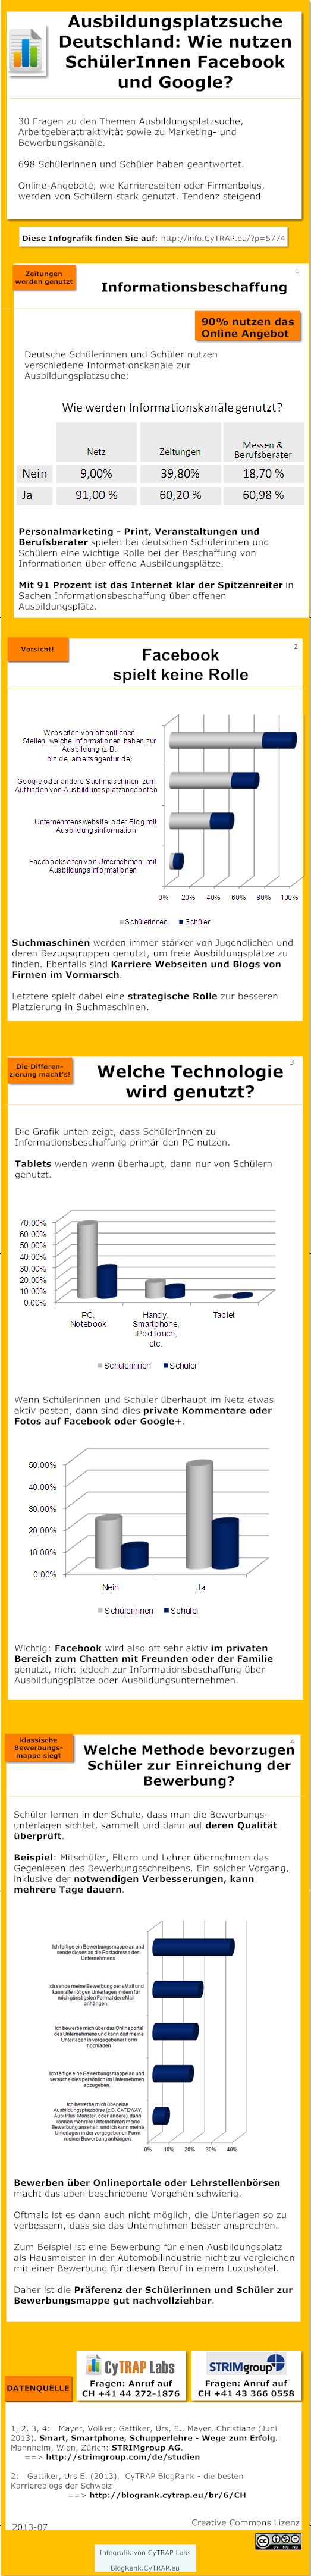 Infografik: Studie von STRIMgroup und CyTRAP Labs. Berufsausbildung: Wie nutzen Deutsche Schueler Facebook, Google und Firmenblogs bei der Suche nach einer Lehrstelle? http://info.cytrap.eu/?p=5774 http://info.cytrap.eu/articles/2013-ratgeber-personalsuche-4